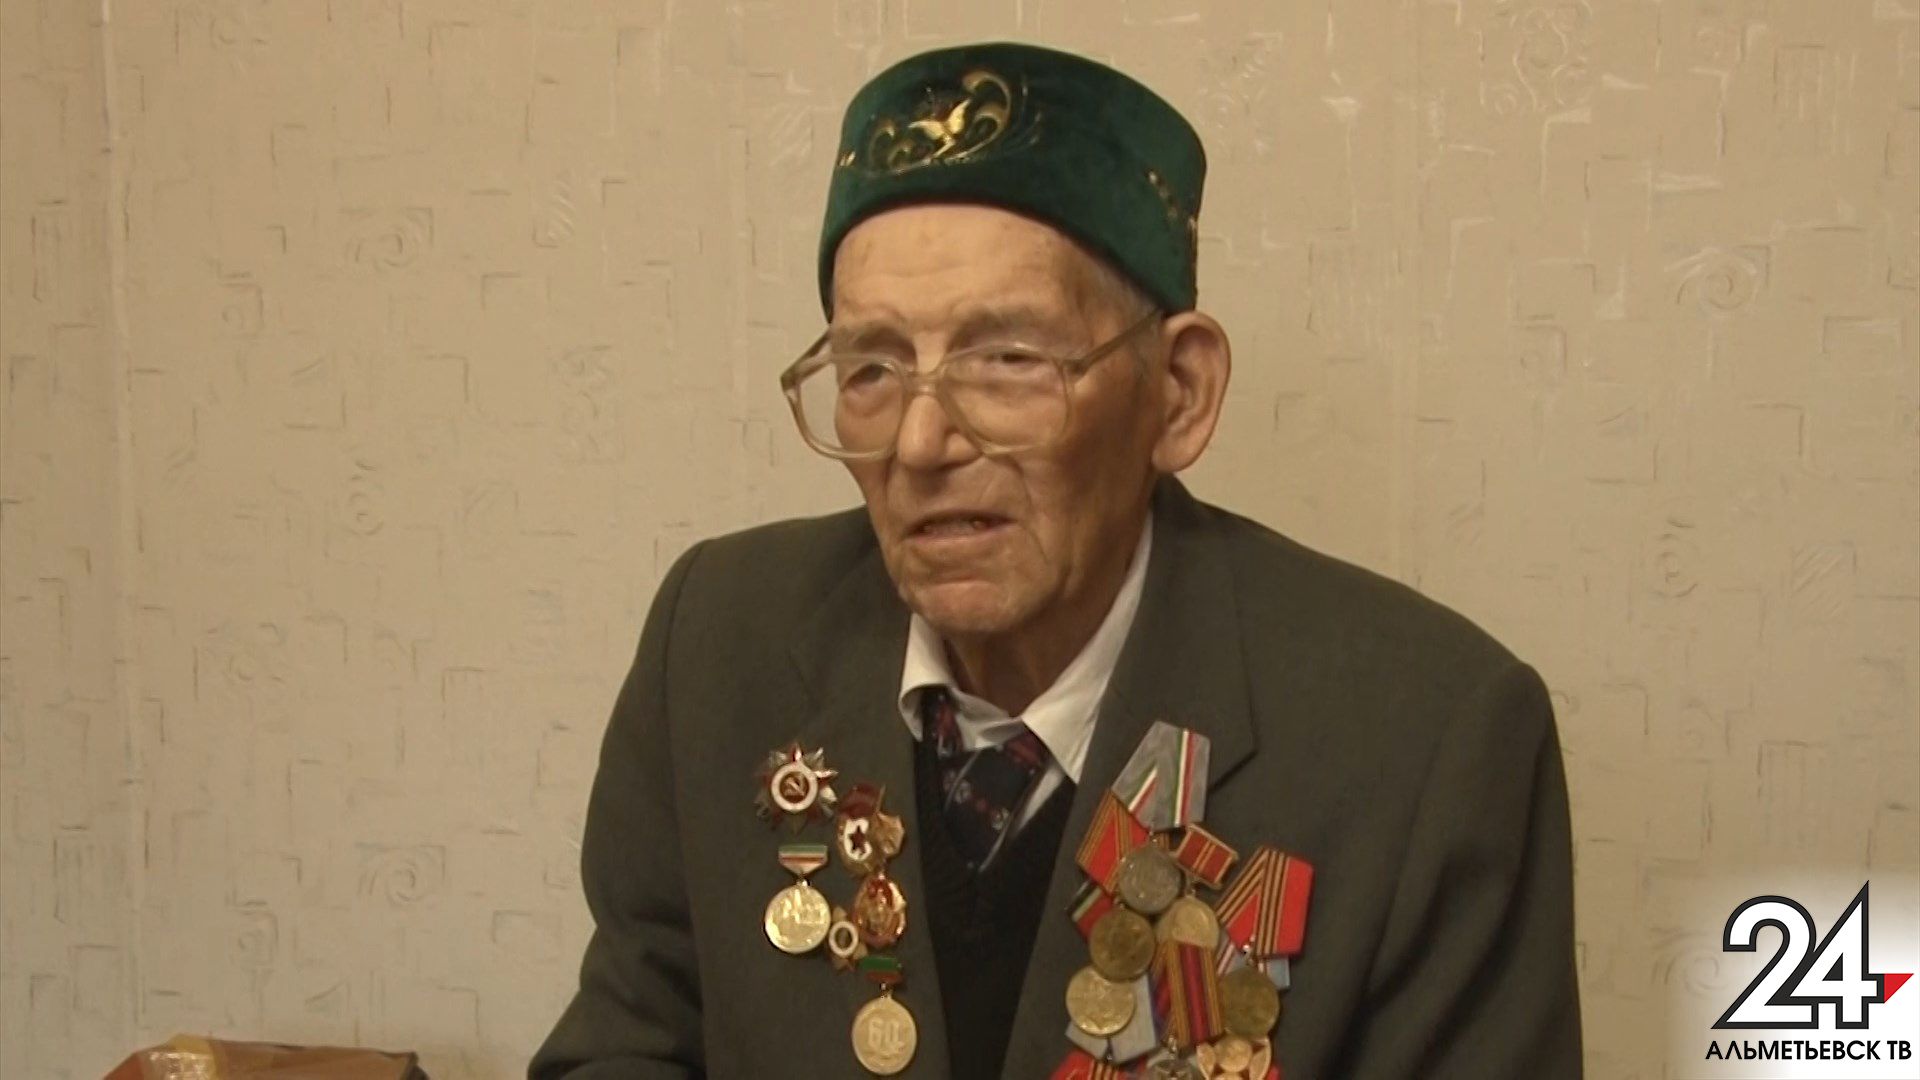 95-летний Габдулбари Габдрахимов из Альметьевска трудится на даче и читает семитомник по истории татар